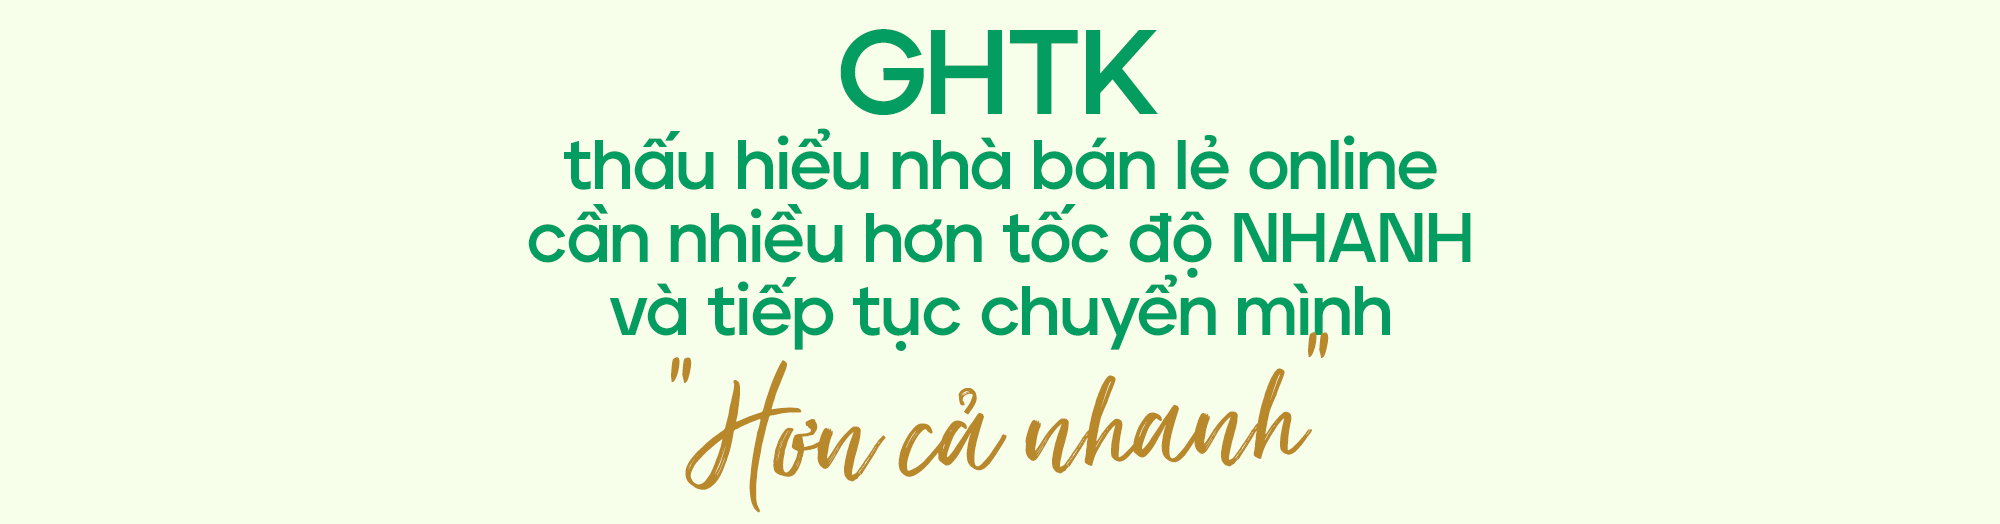 GHTK - Sự chuyển mình “Hơn cả nhanh” - Ảnh 4.